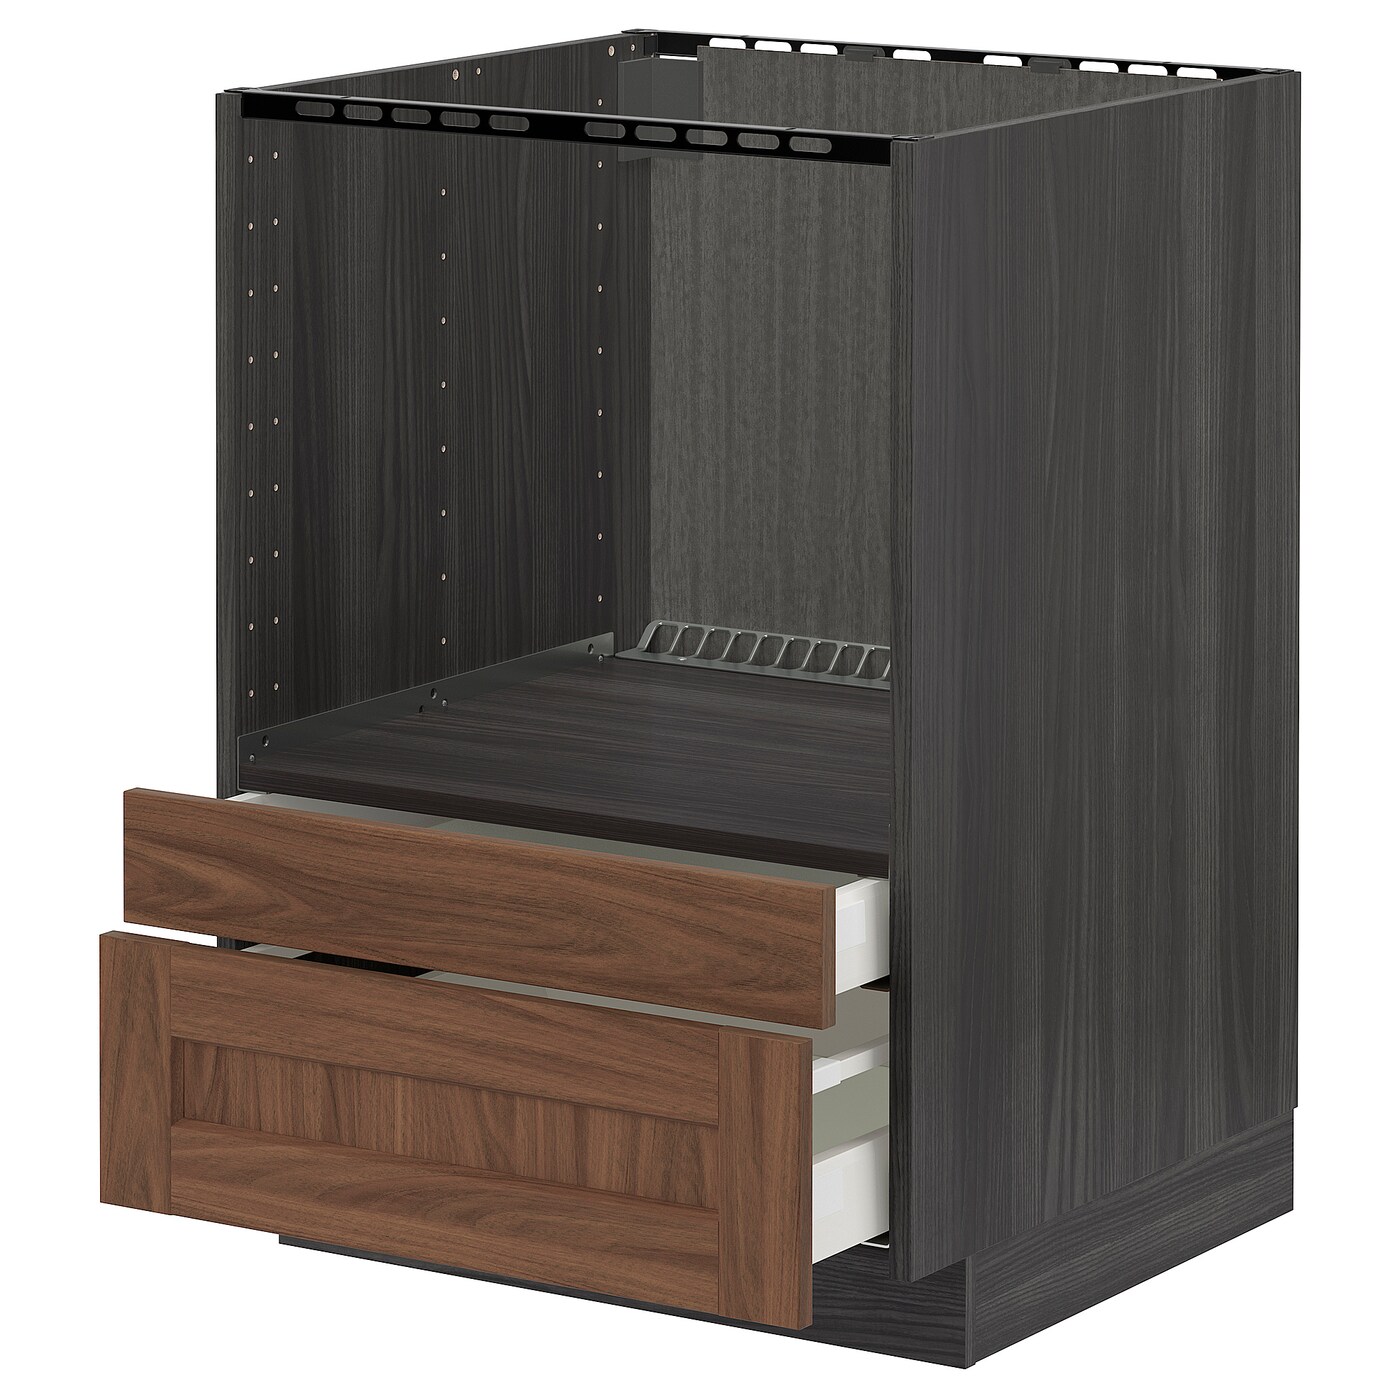 Шкаф для встроенной техники - IKEA METOD MAXIMERA, 88x62x60см, черный, МЕТОД МАКСИМЕРА ИКЕА